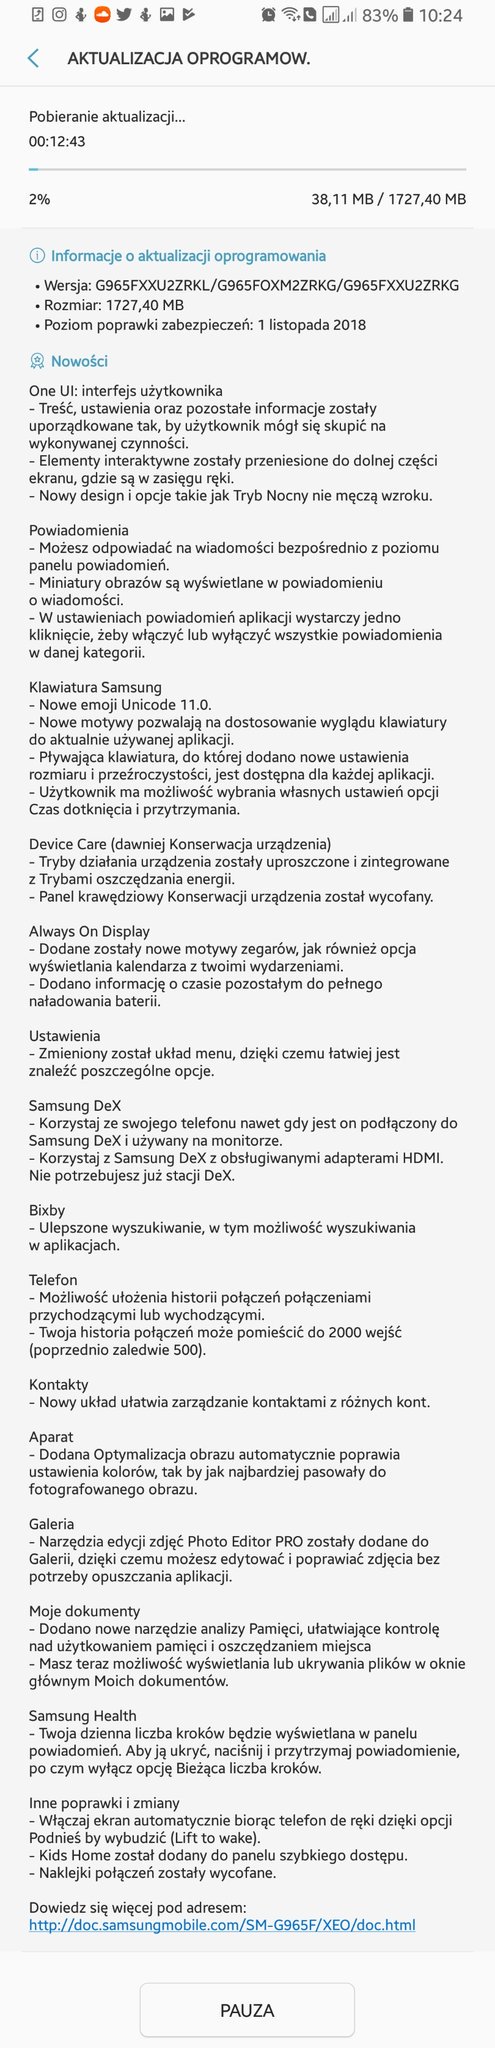 Program One UI beta w Polsce Samsung Galaxy S9 Android Pie testy aktualizacja kiedy dla wszystkich